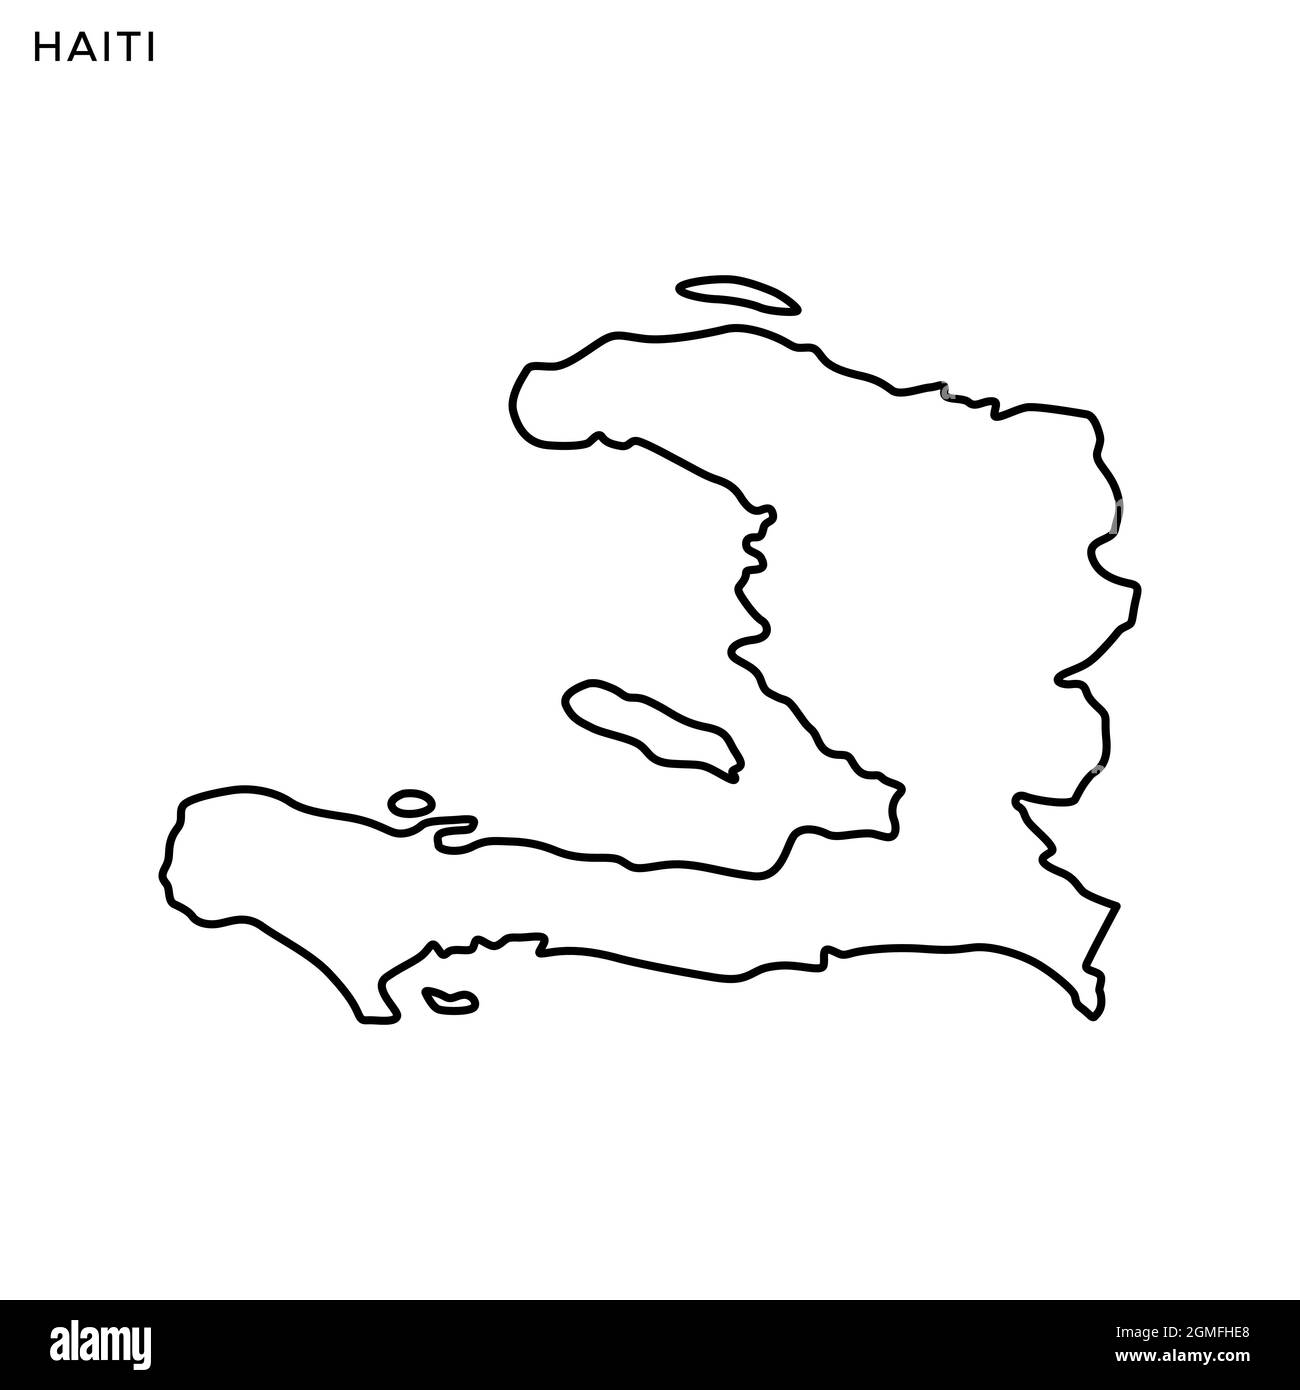 Plan linéaire du modèle de dessin d'illustrations vectorielles Haïti. Contour modifiable. Vecteur eps 10. Illustration de Vecteur